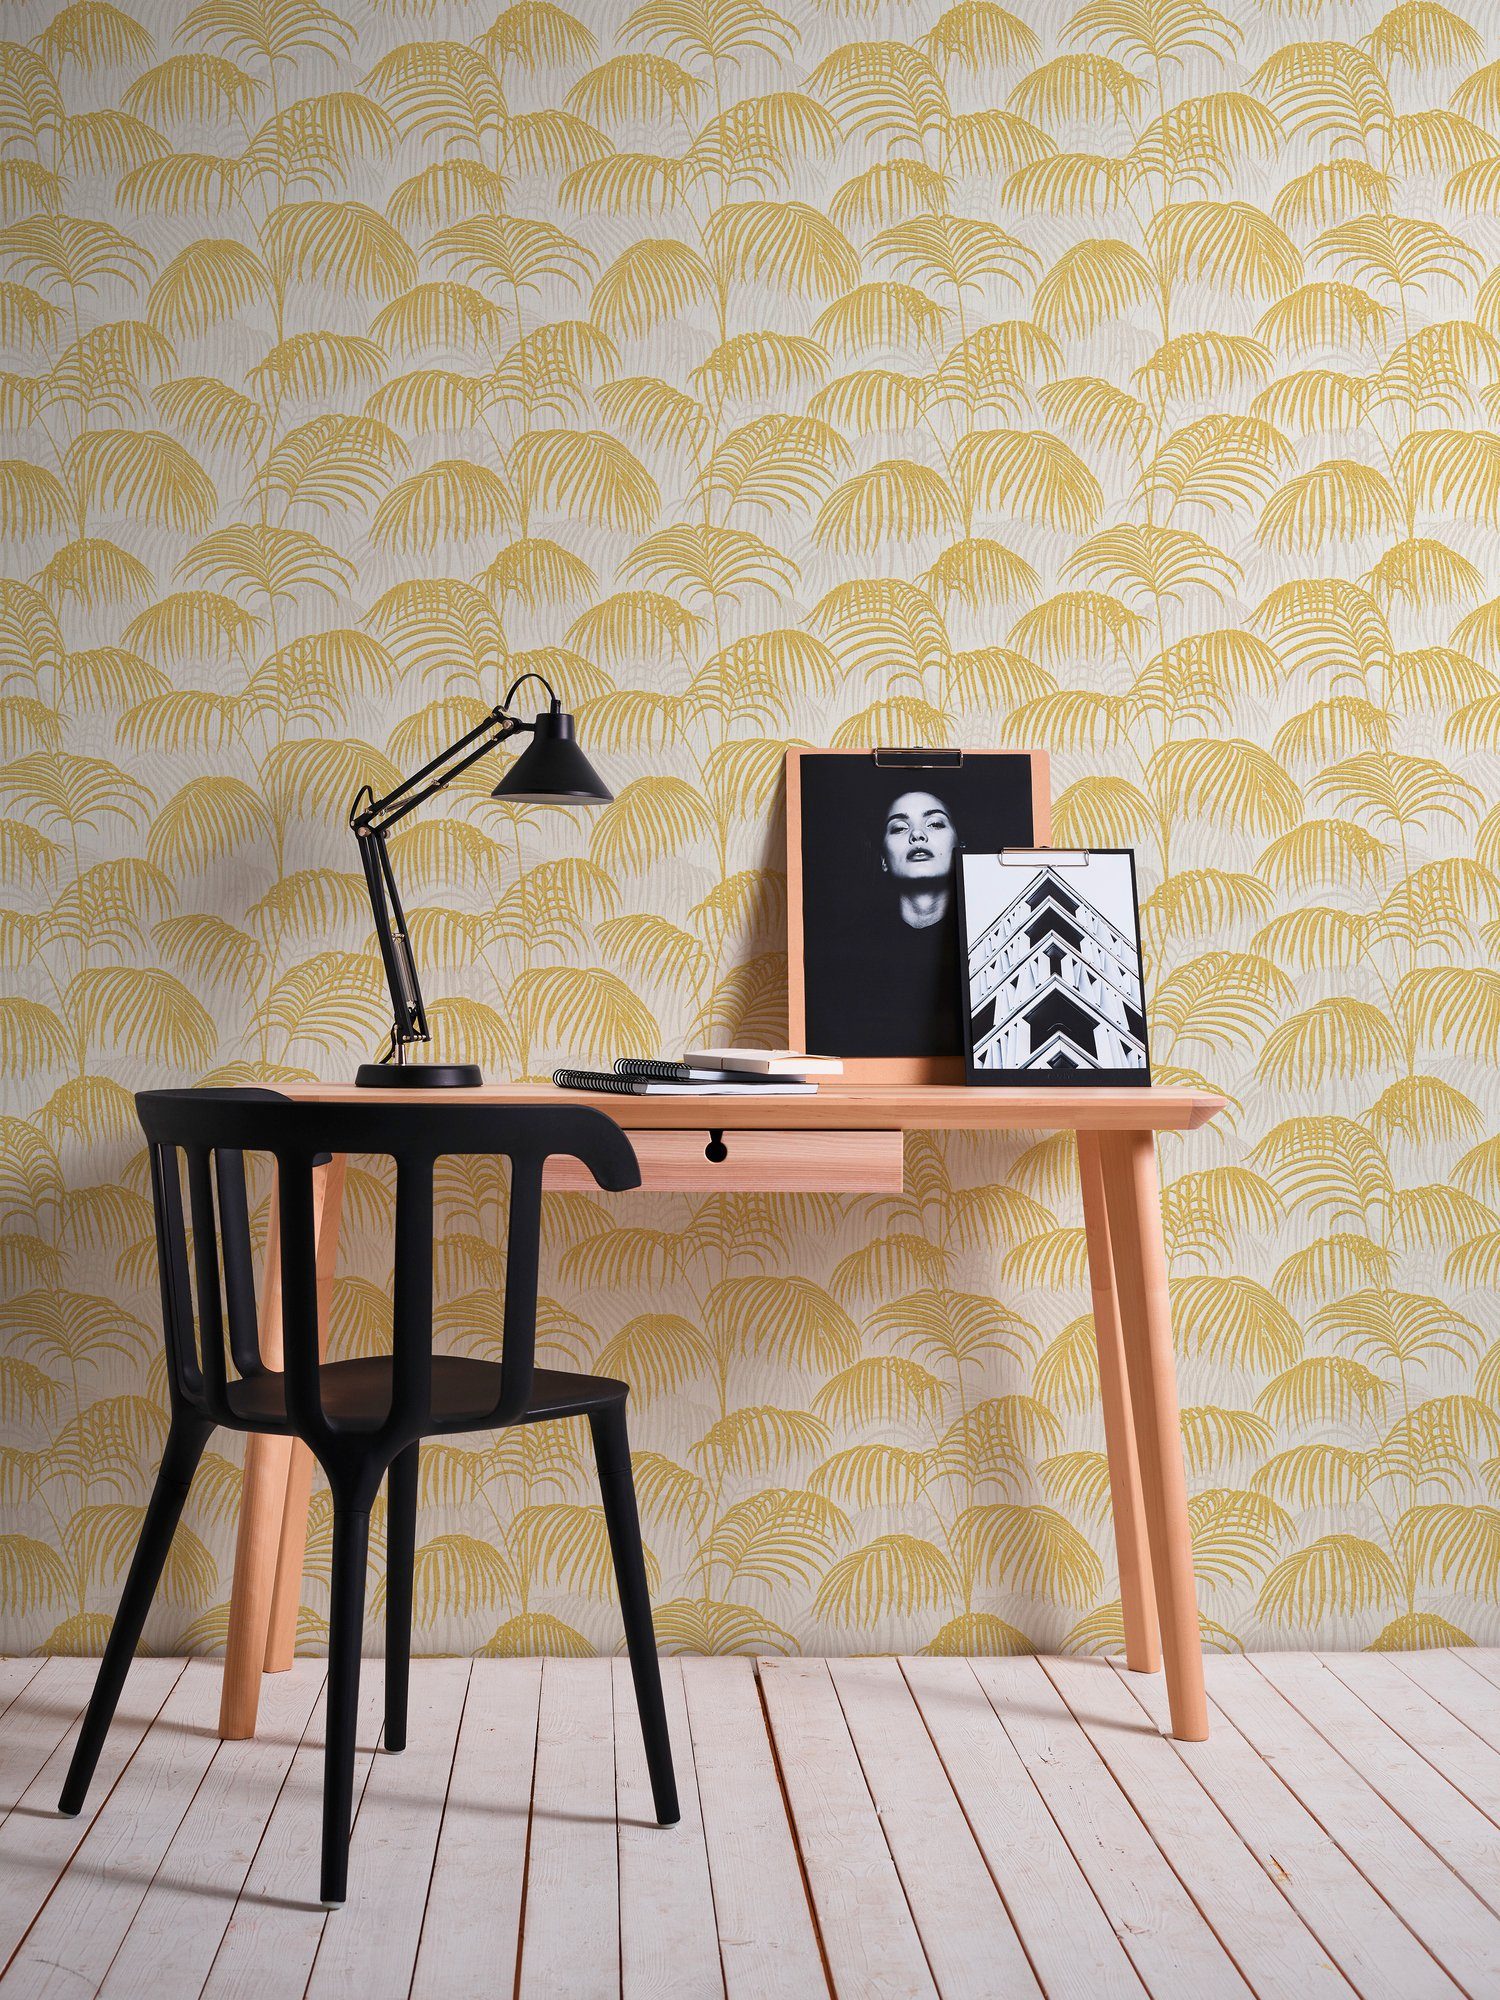 A.S. Création Tapete Palmen samtig, Architects gold/gelb/weiß Dschungeltapete Textiltapete botanisch, Tessuto, floral, Paper